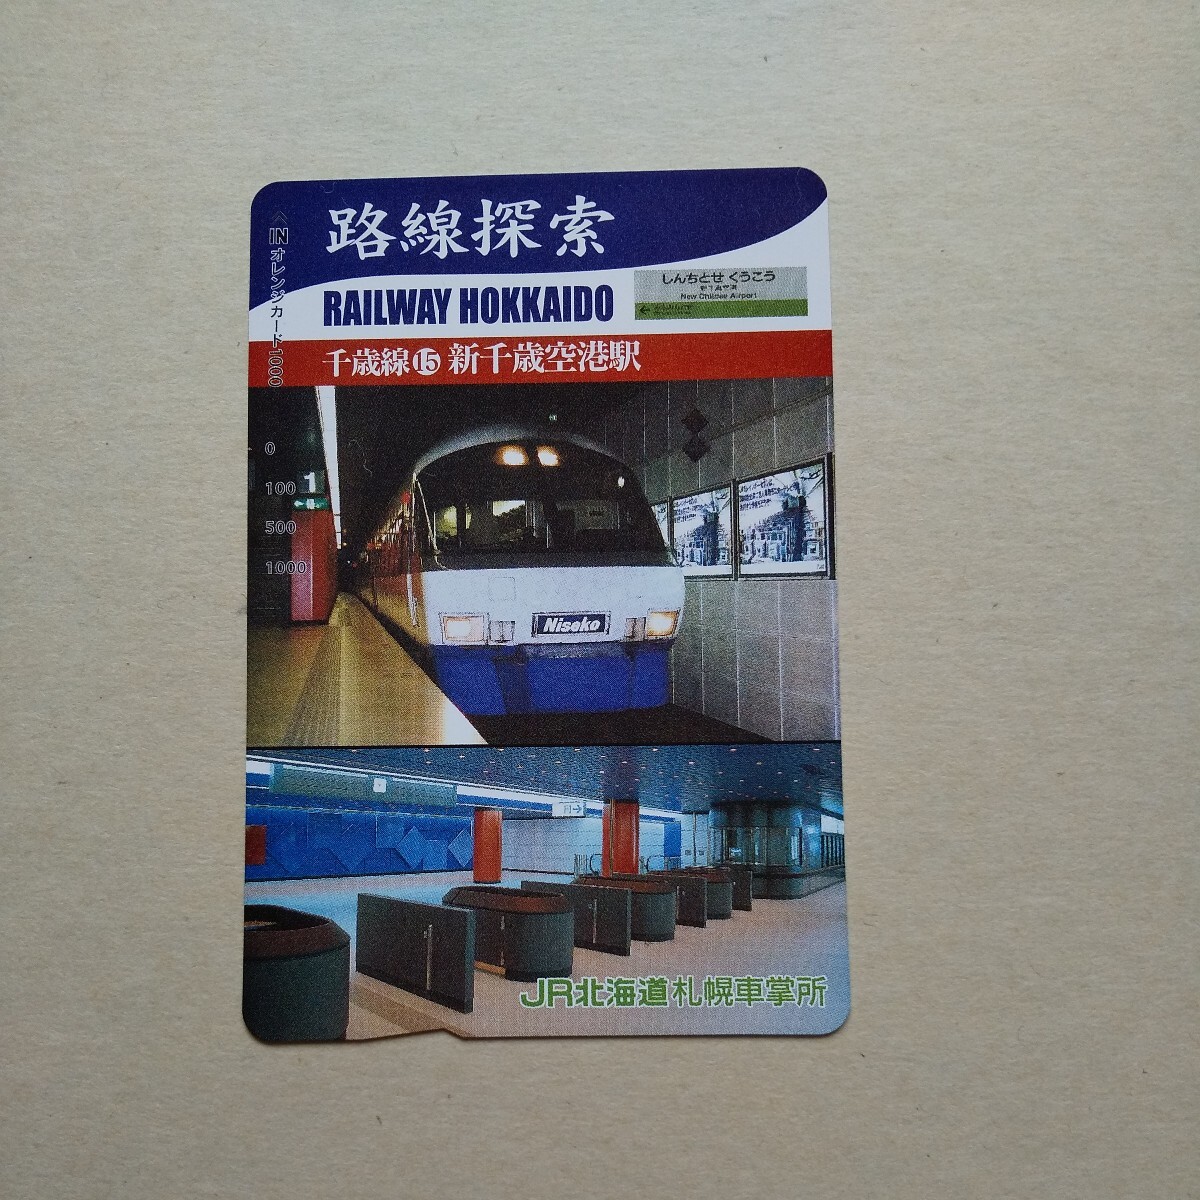 * ценный товар * маршрут .. Chitose линия ⑮ новый Chitose аэропорт станция очень красивый товар Orange Card не продается образец товар станция конструкция внутри выставленный товар античный 